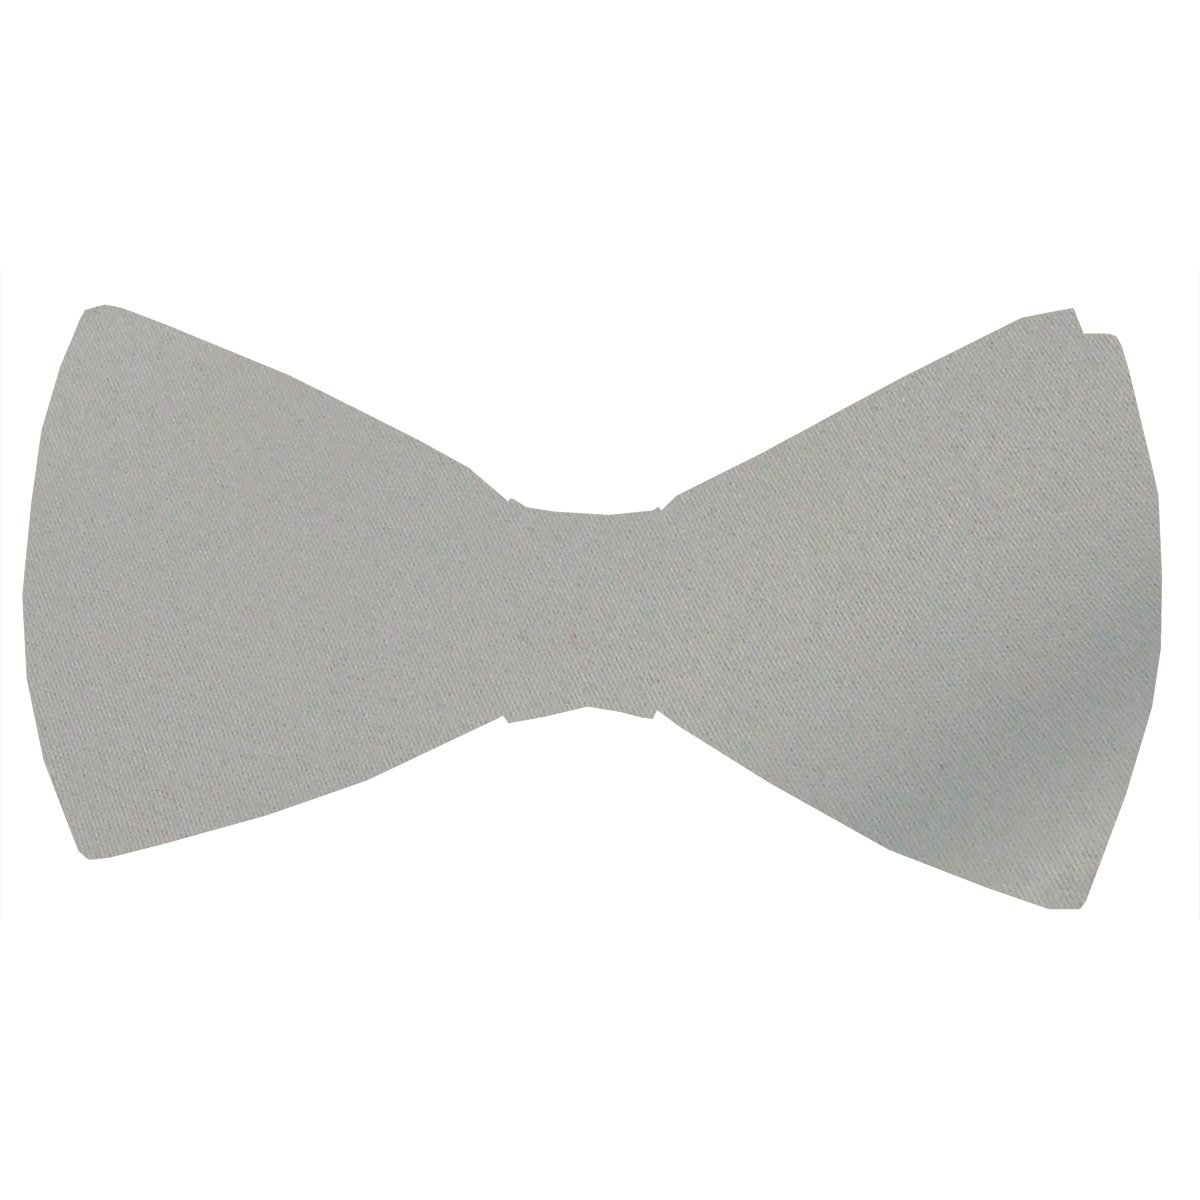 Lunar Grey Bow Tie - Wedding